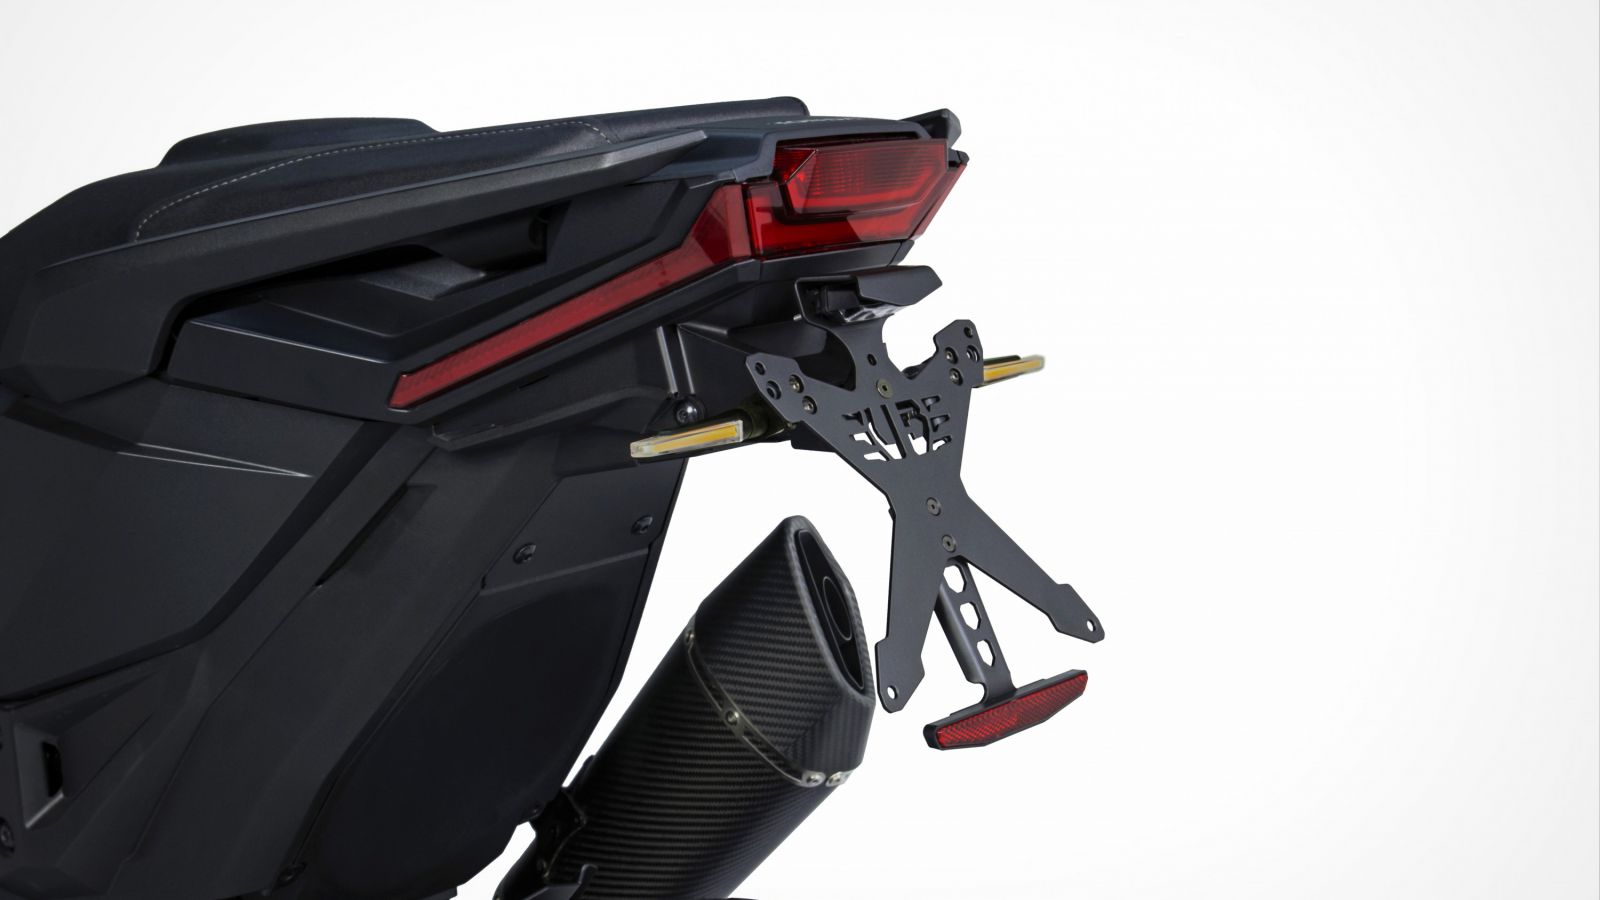 Kit de extensión para portamatrículas Adventure y Mono Arm Honda X-ADV 750  - Urbano Bruni Moto